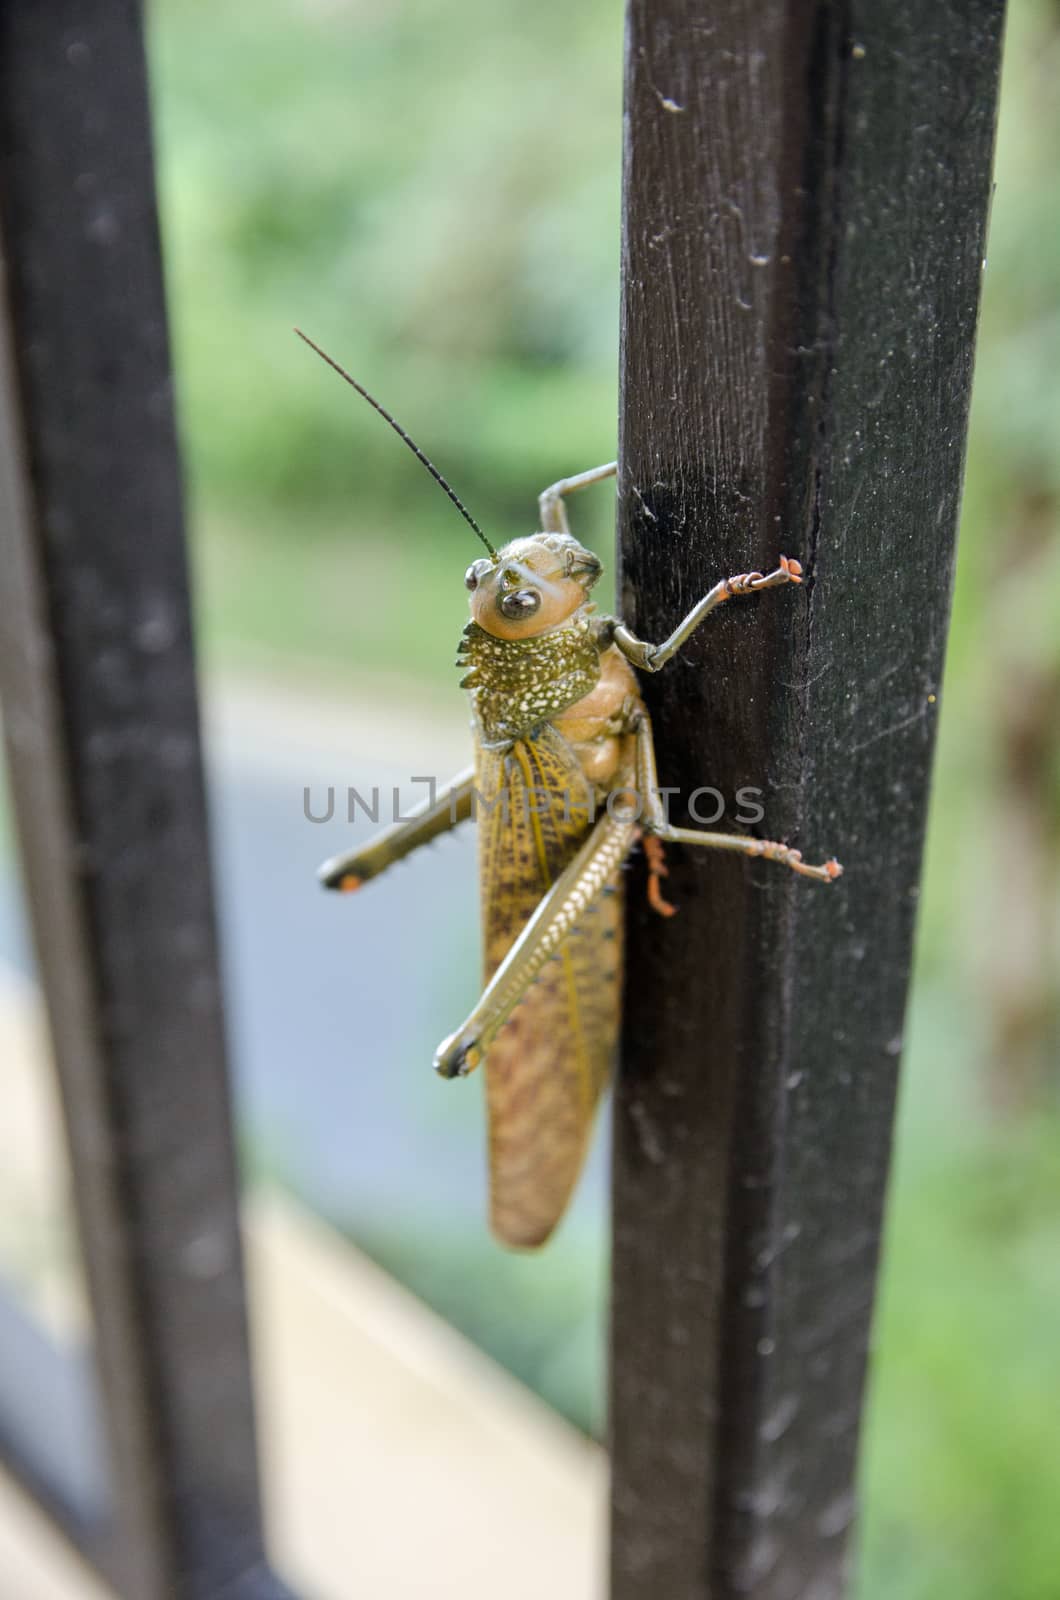 Giant Grasshopper, latin name Tropidacris cristata, resting on a metal fence in Tobago.